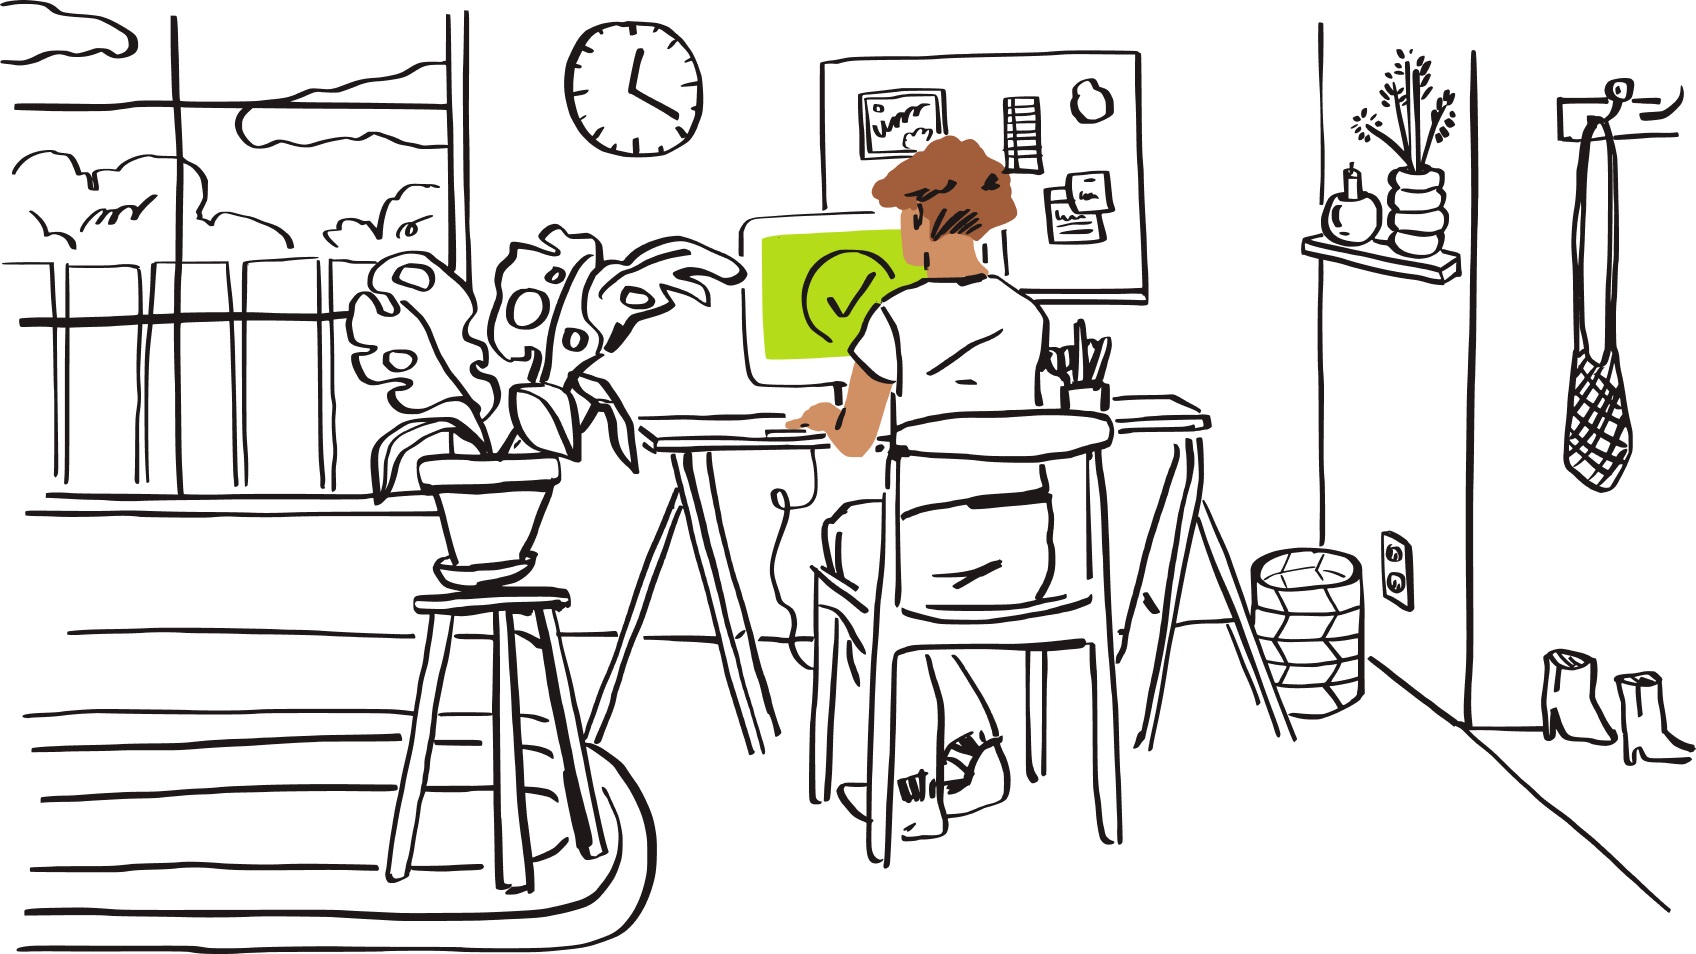 En medarbeider jobber hjemmefra ved skrivebordet på hjemmekontoret, med en grønn skjerm med en hake på.